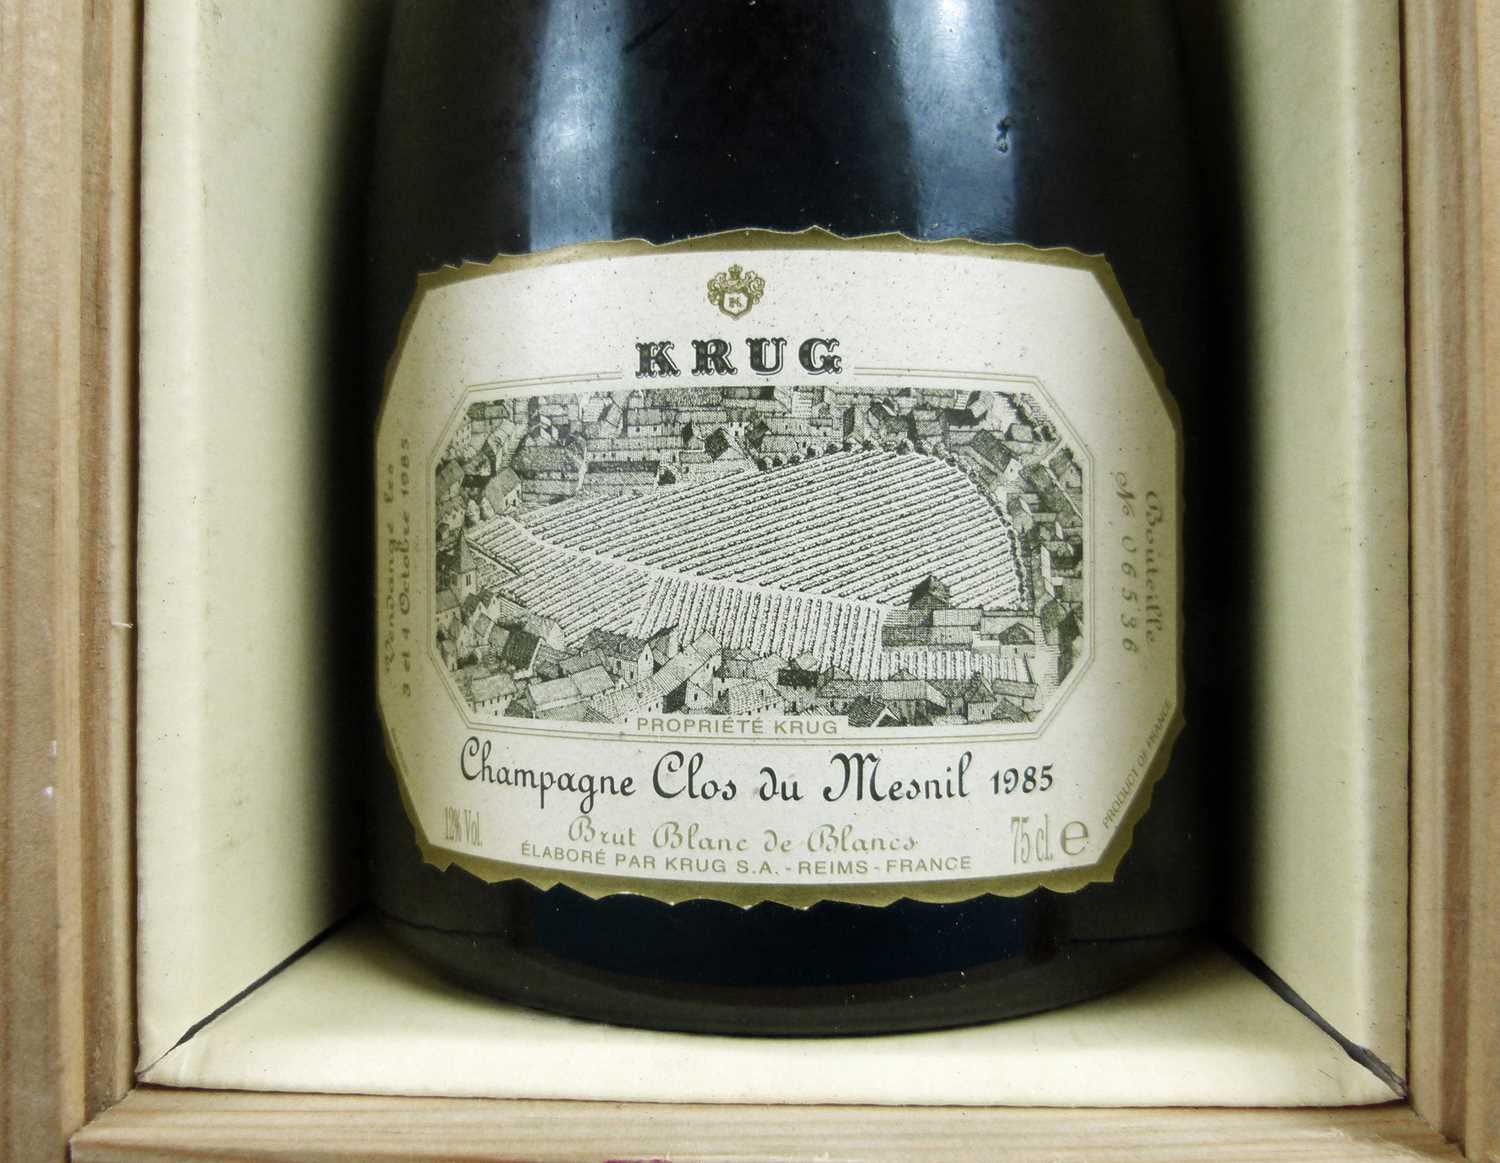 1 bottle Champagne Krug ‘Clos du Mesnil’ Vintage 1985 - Image 2 of 2